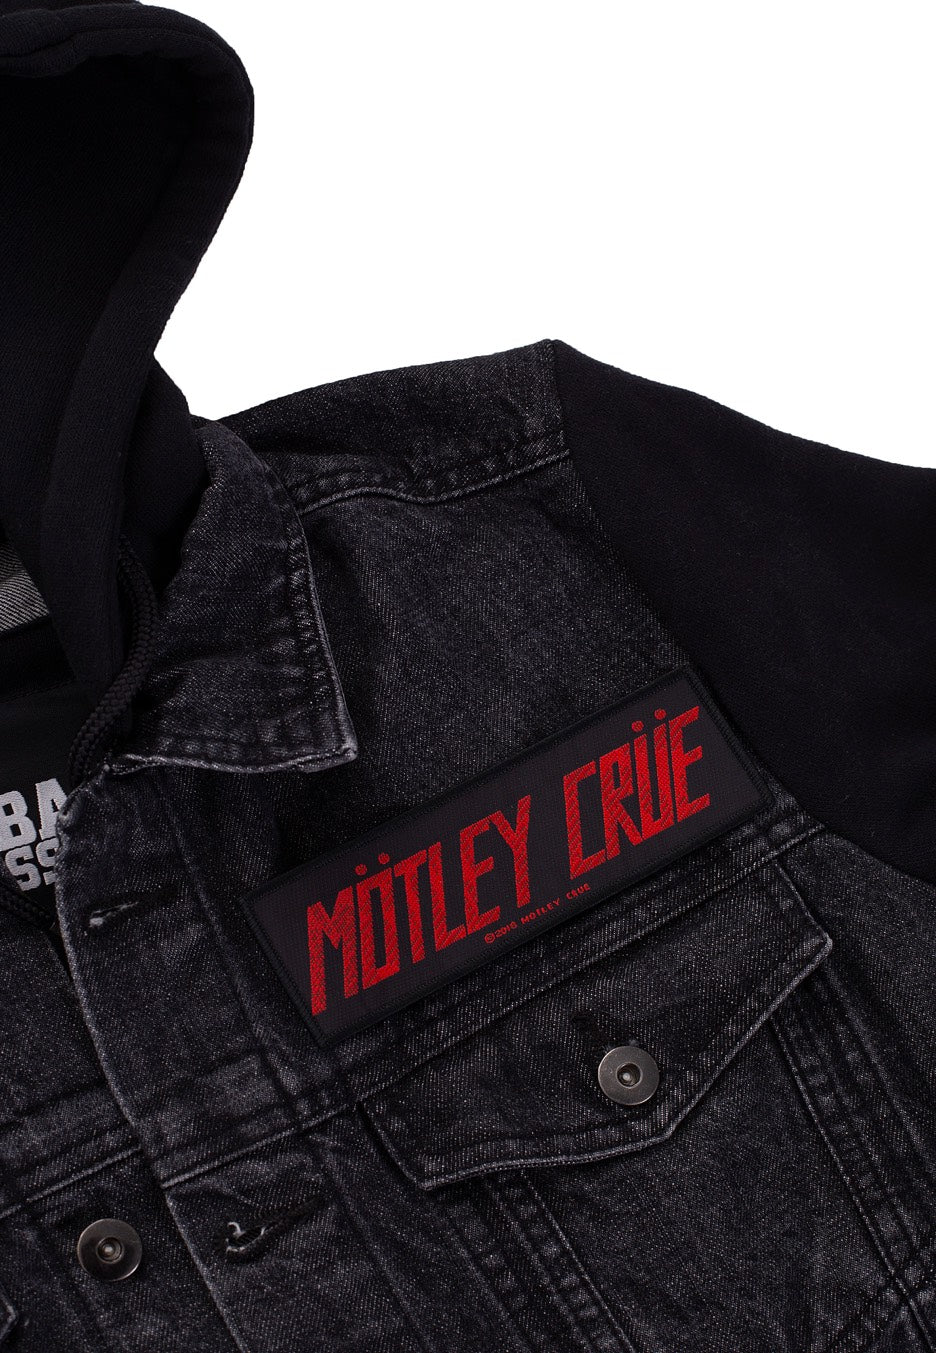 Mötley Crüe - Logo - Patch